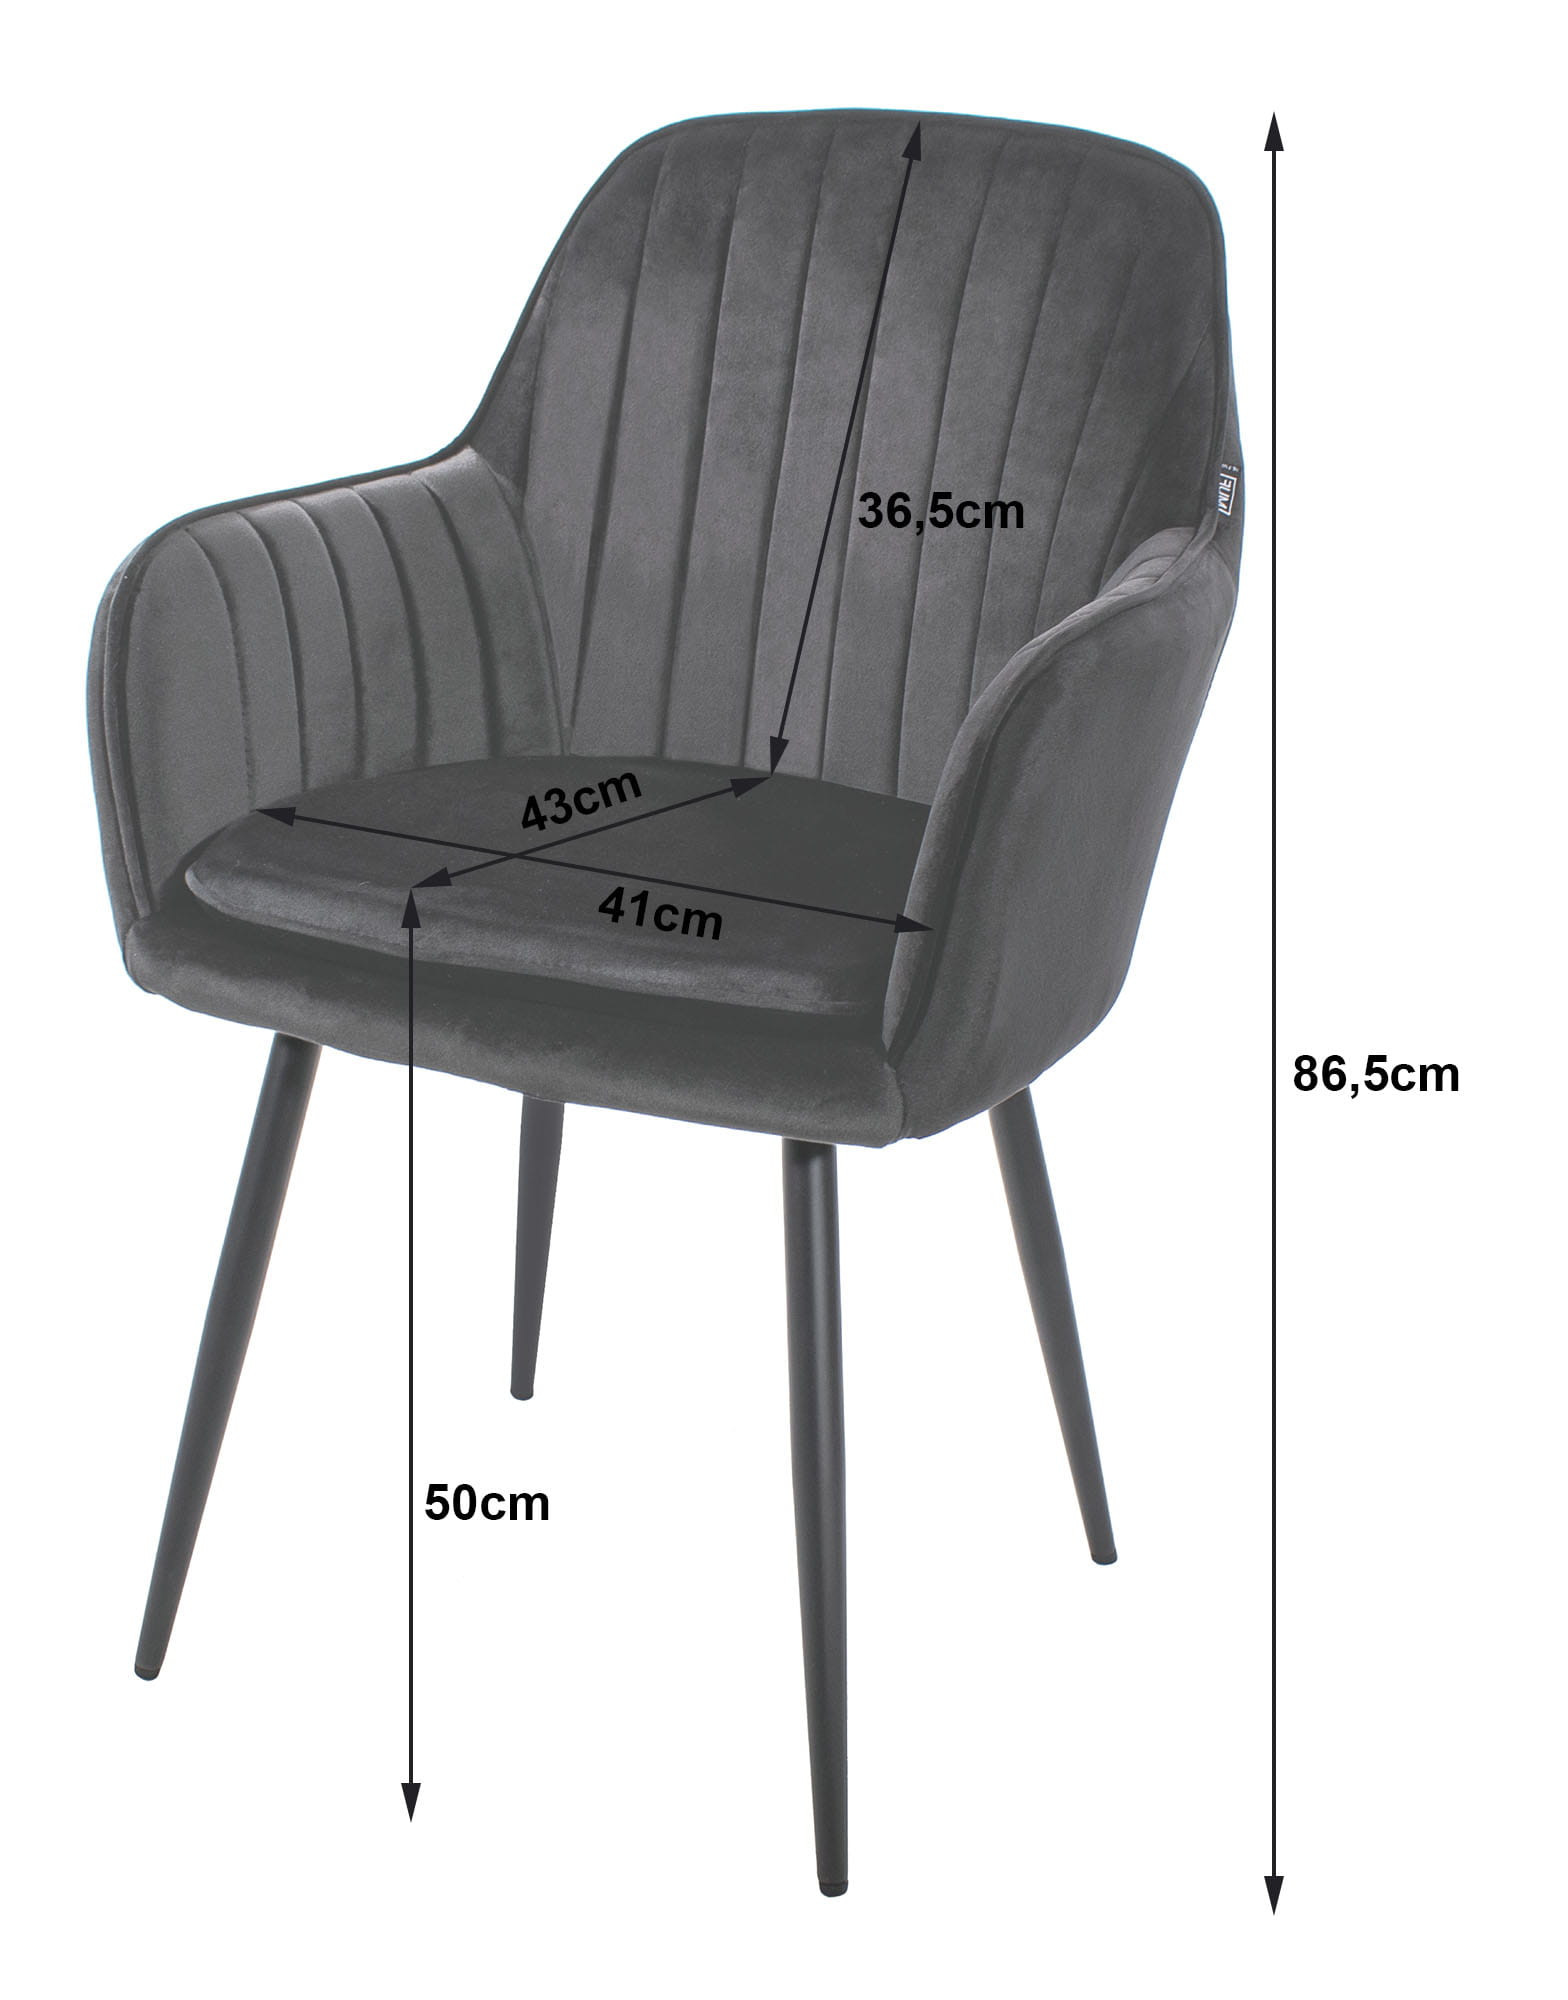 Jídelní židle LUGO stříbrná / šedá